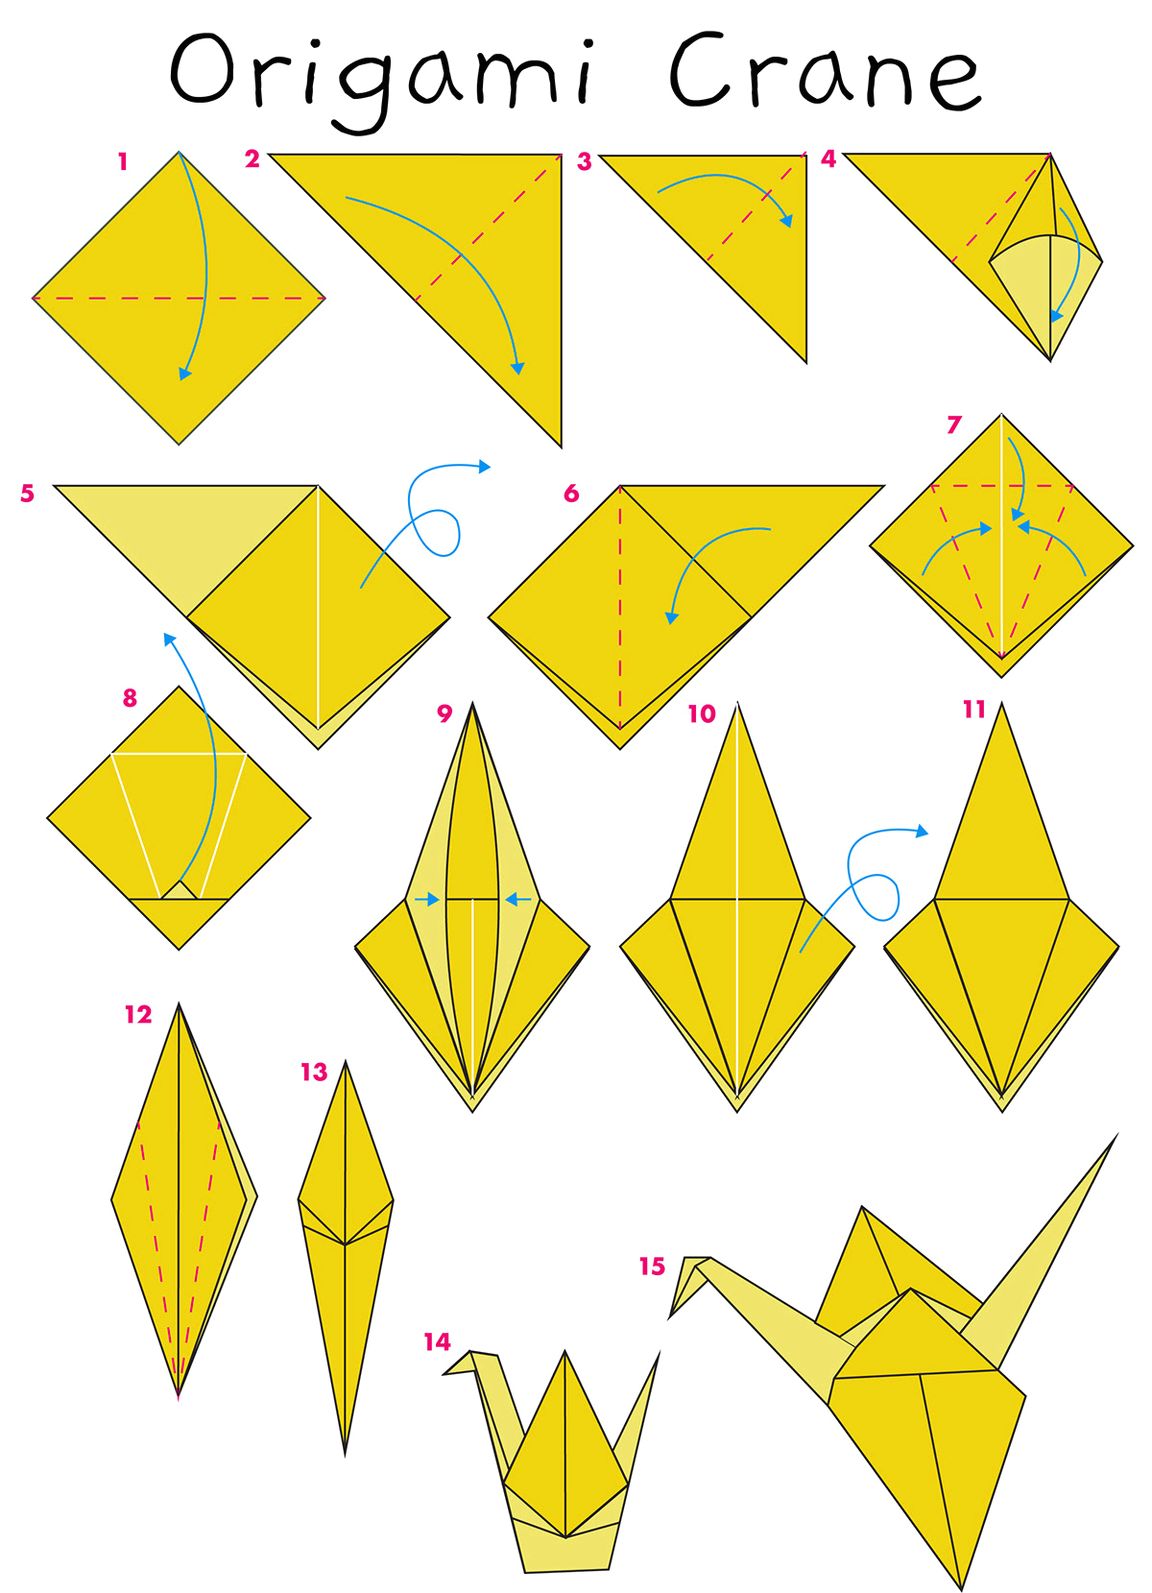 Crane origami diagram